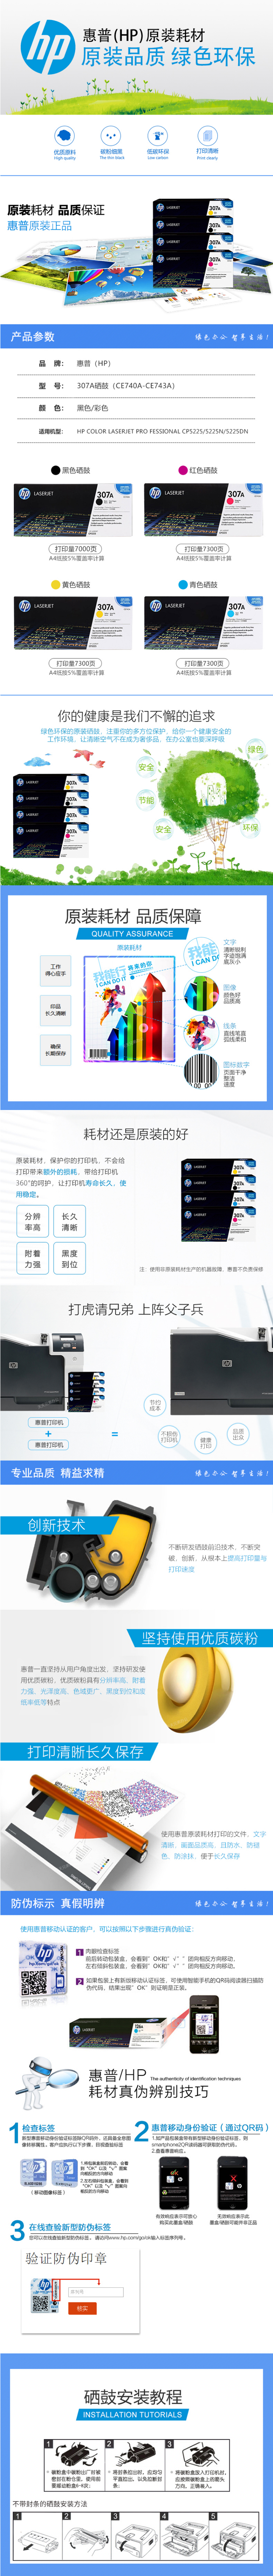 佳能（中国）-EOS数码单反相机 － EOS 80D － 产品特征 － 高性能自动对焦.png